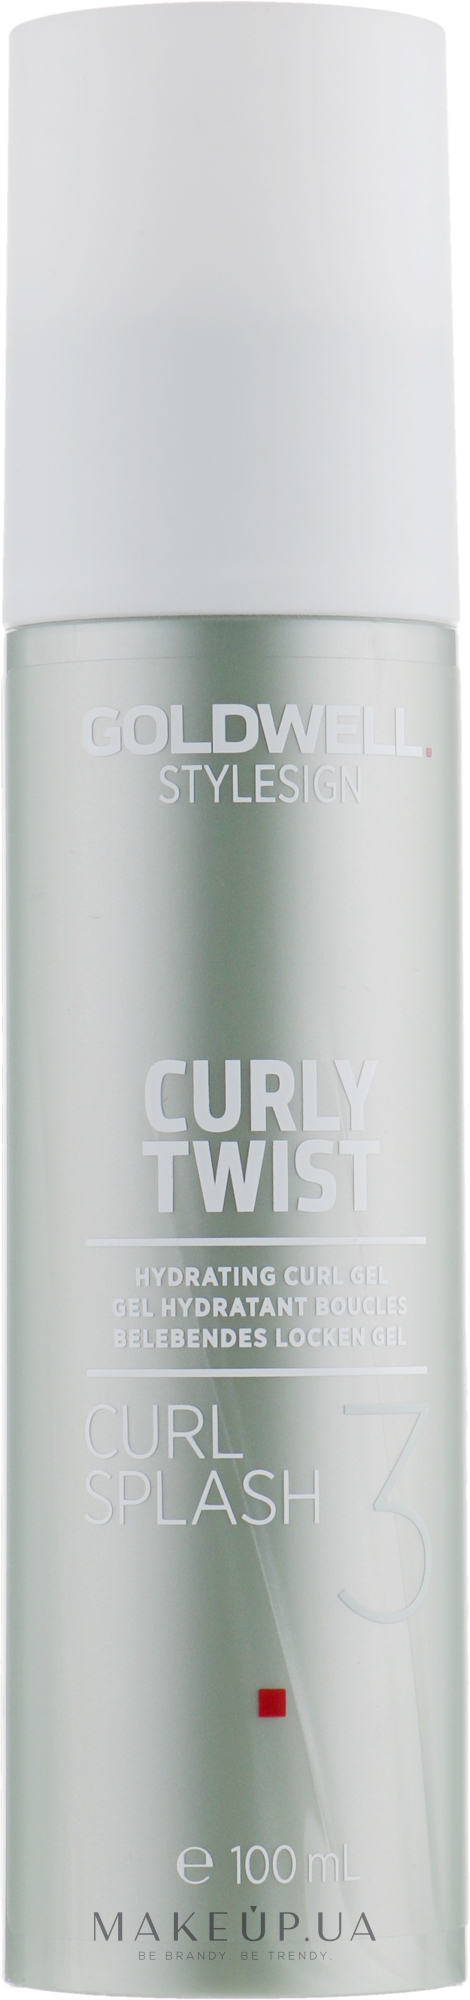 Гідрогель для створення пружних локонів - Goldwell Stylesign Curly Twist Curl Splash Hydrating Curl Gel — фото 100ml